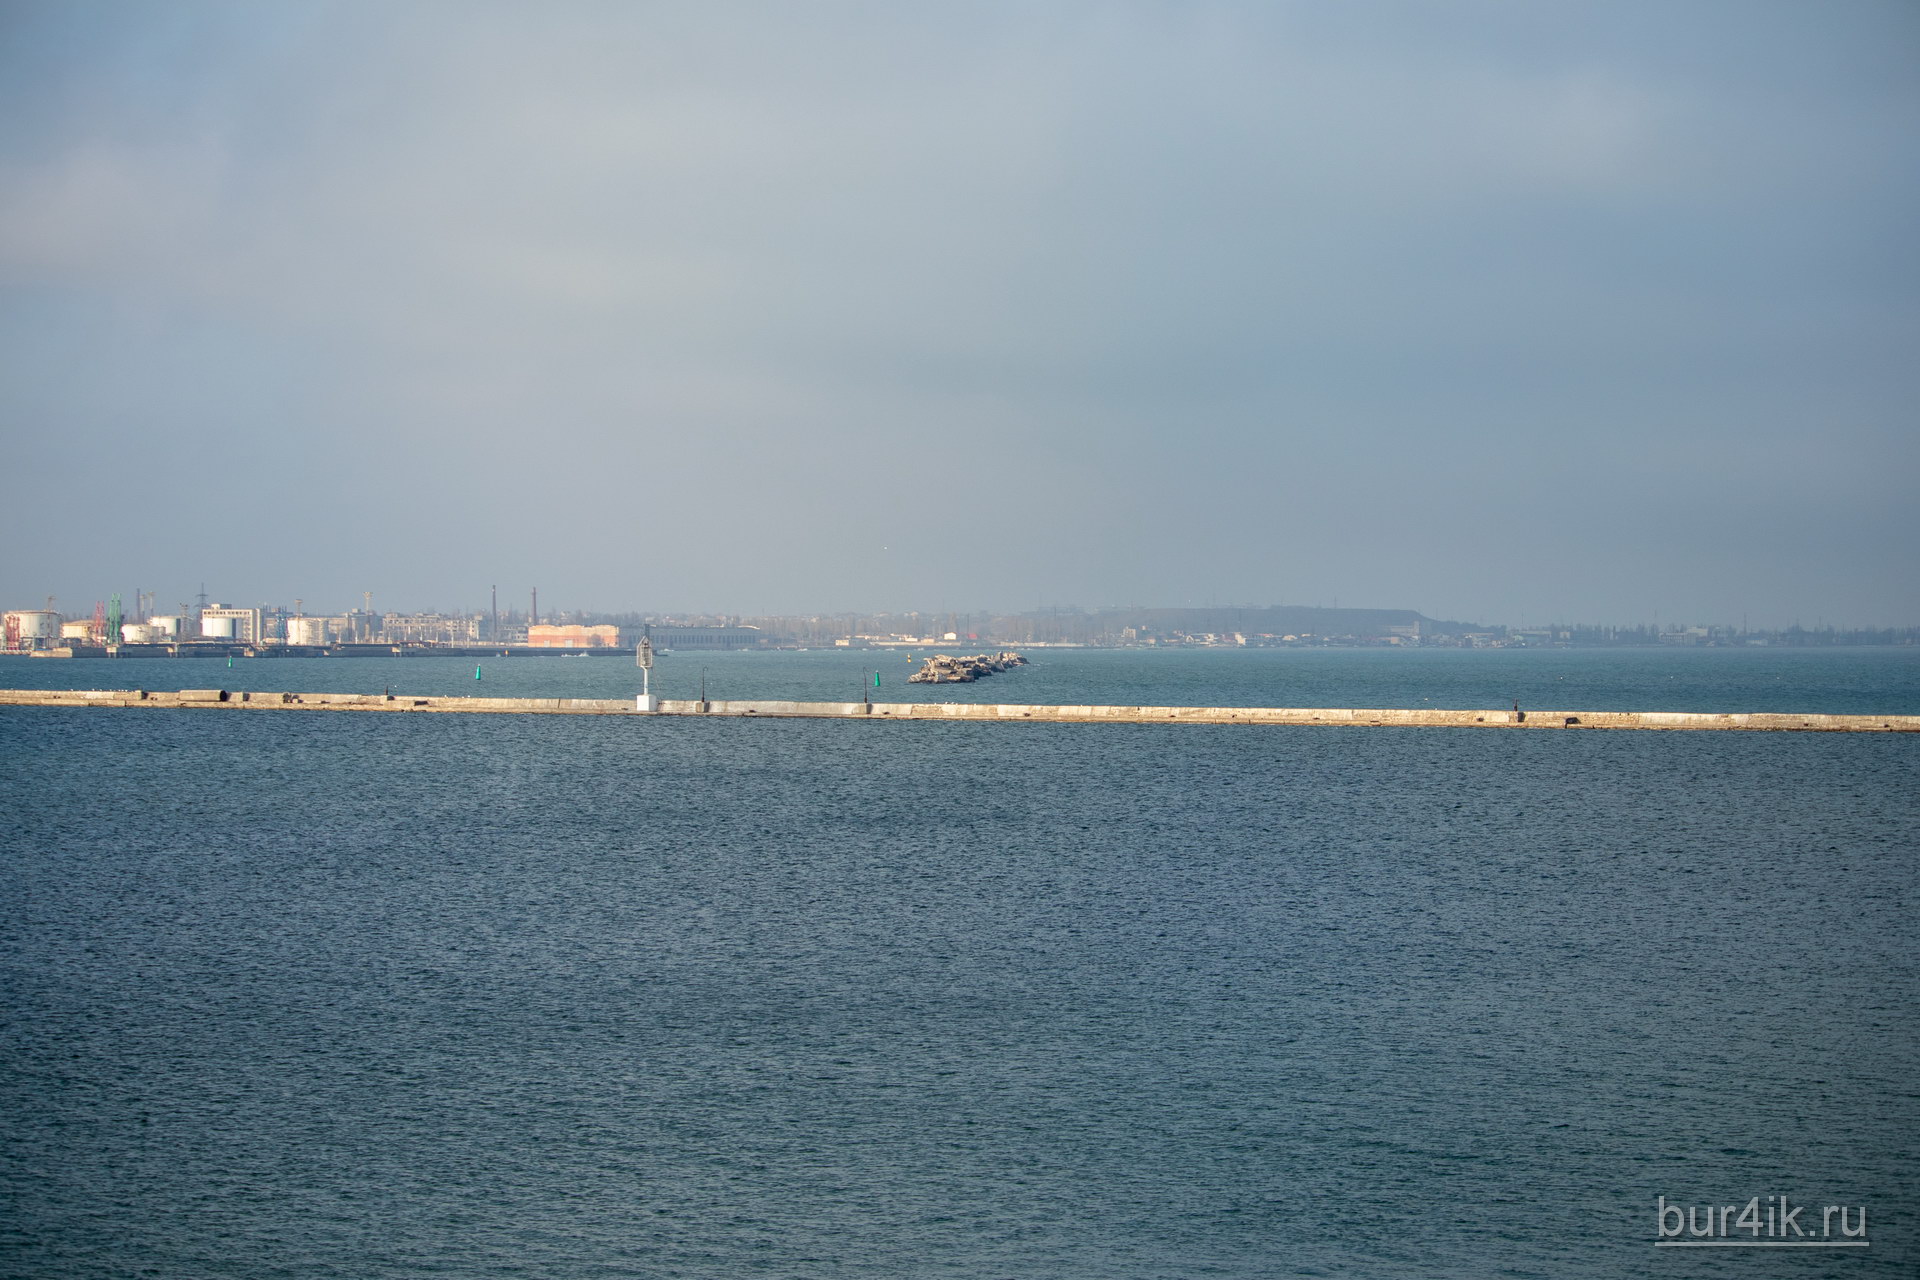 Бетонные конструкции в воде для защиты судов в порту города Одесса 1